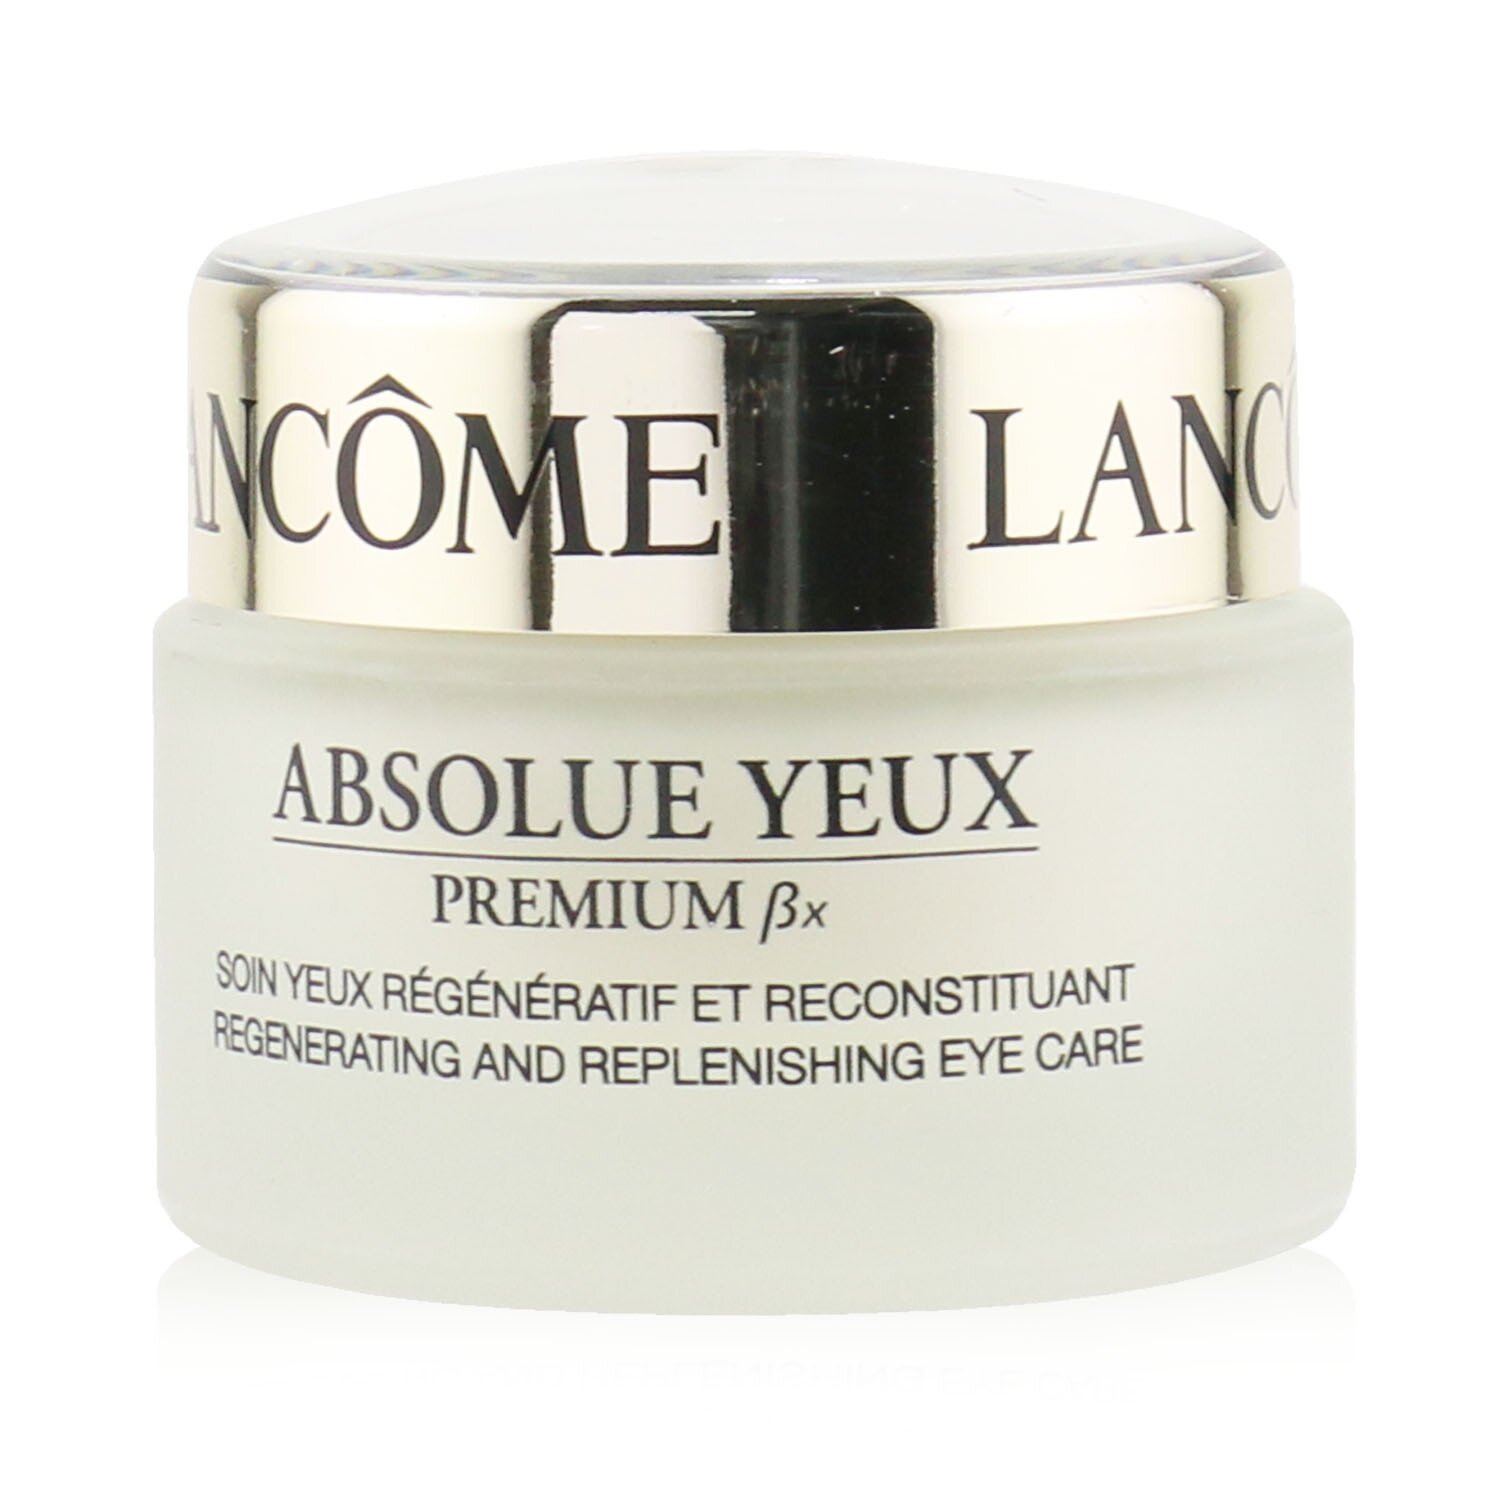 蘭蔻 Lancome - Absolue Yeux Premium BX 滋養眼霜 Absolue Yeux Premium BX Regenerating And Replenishing Eye Care